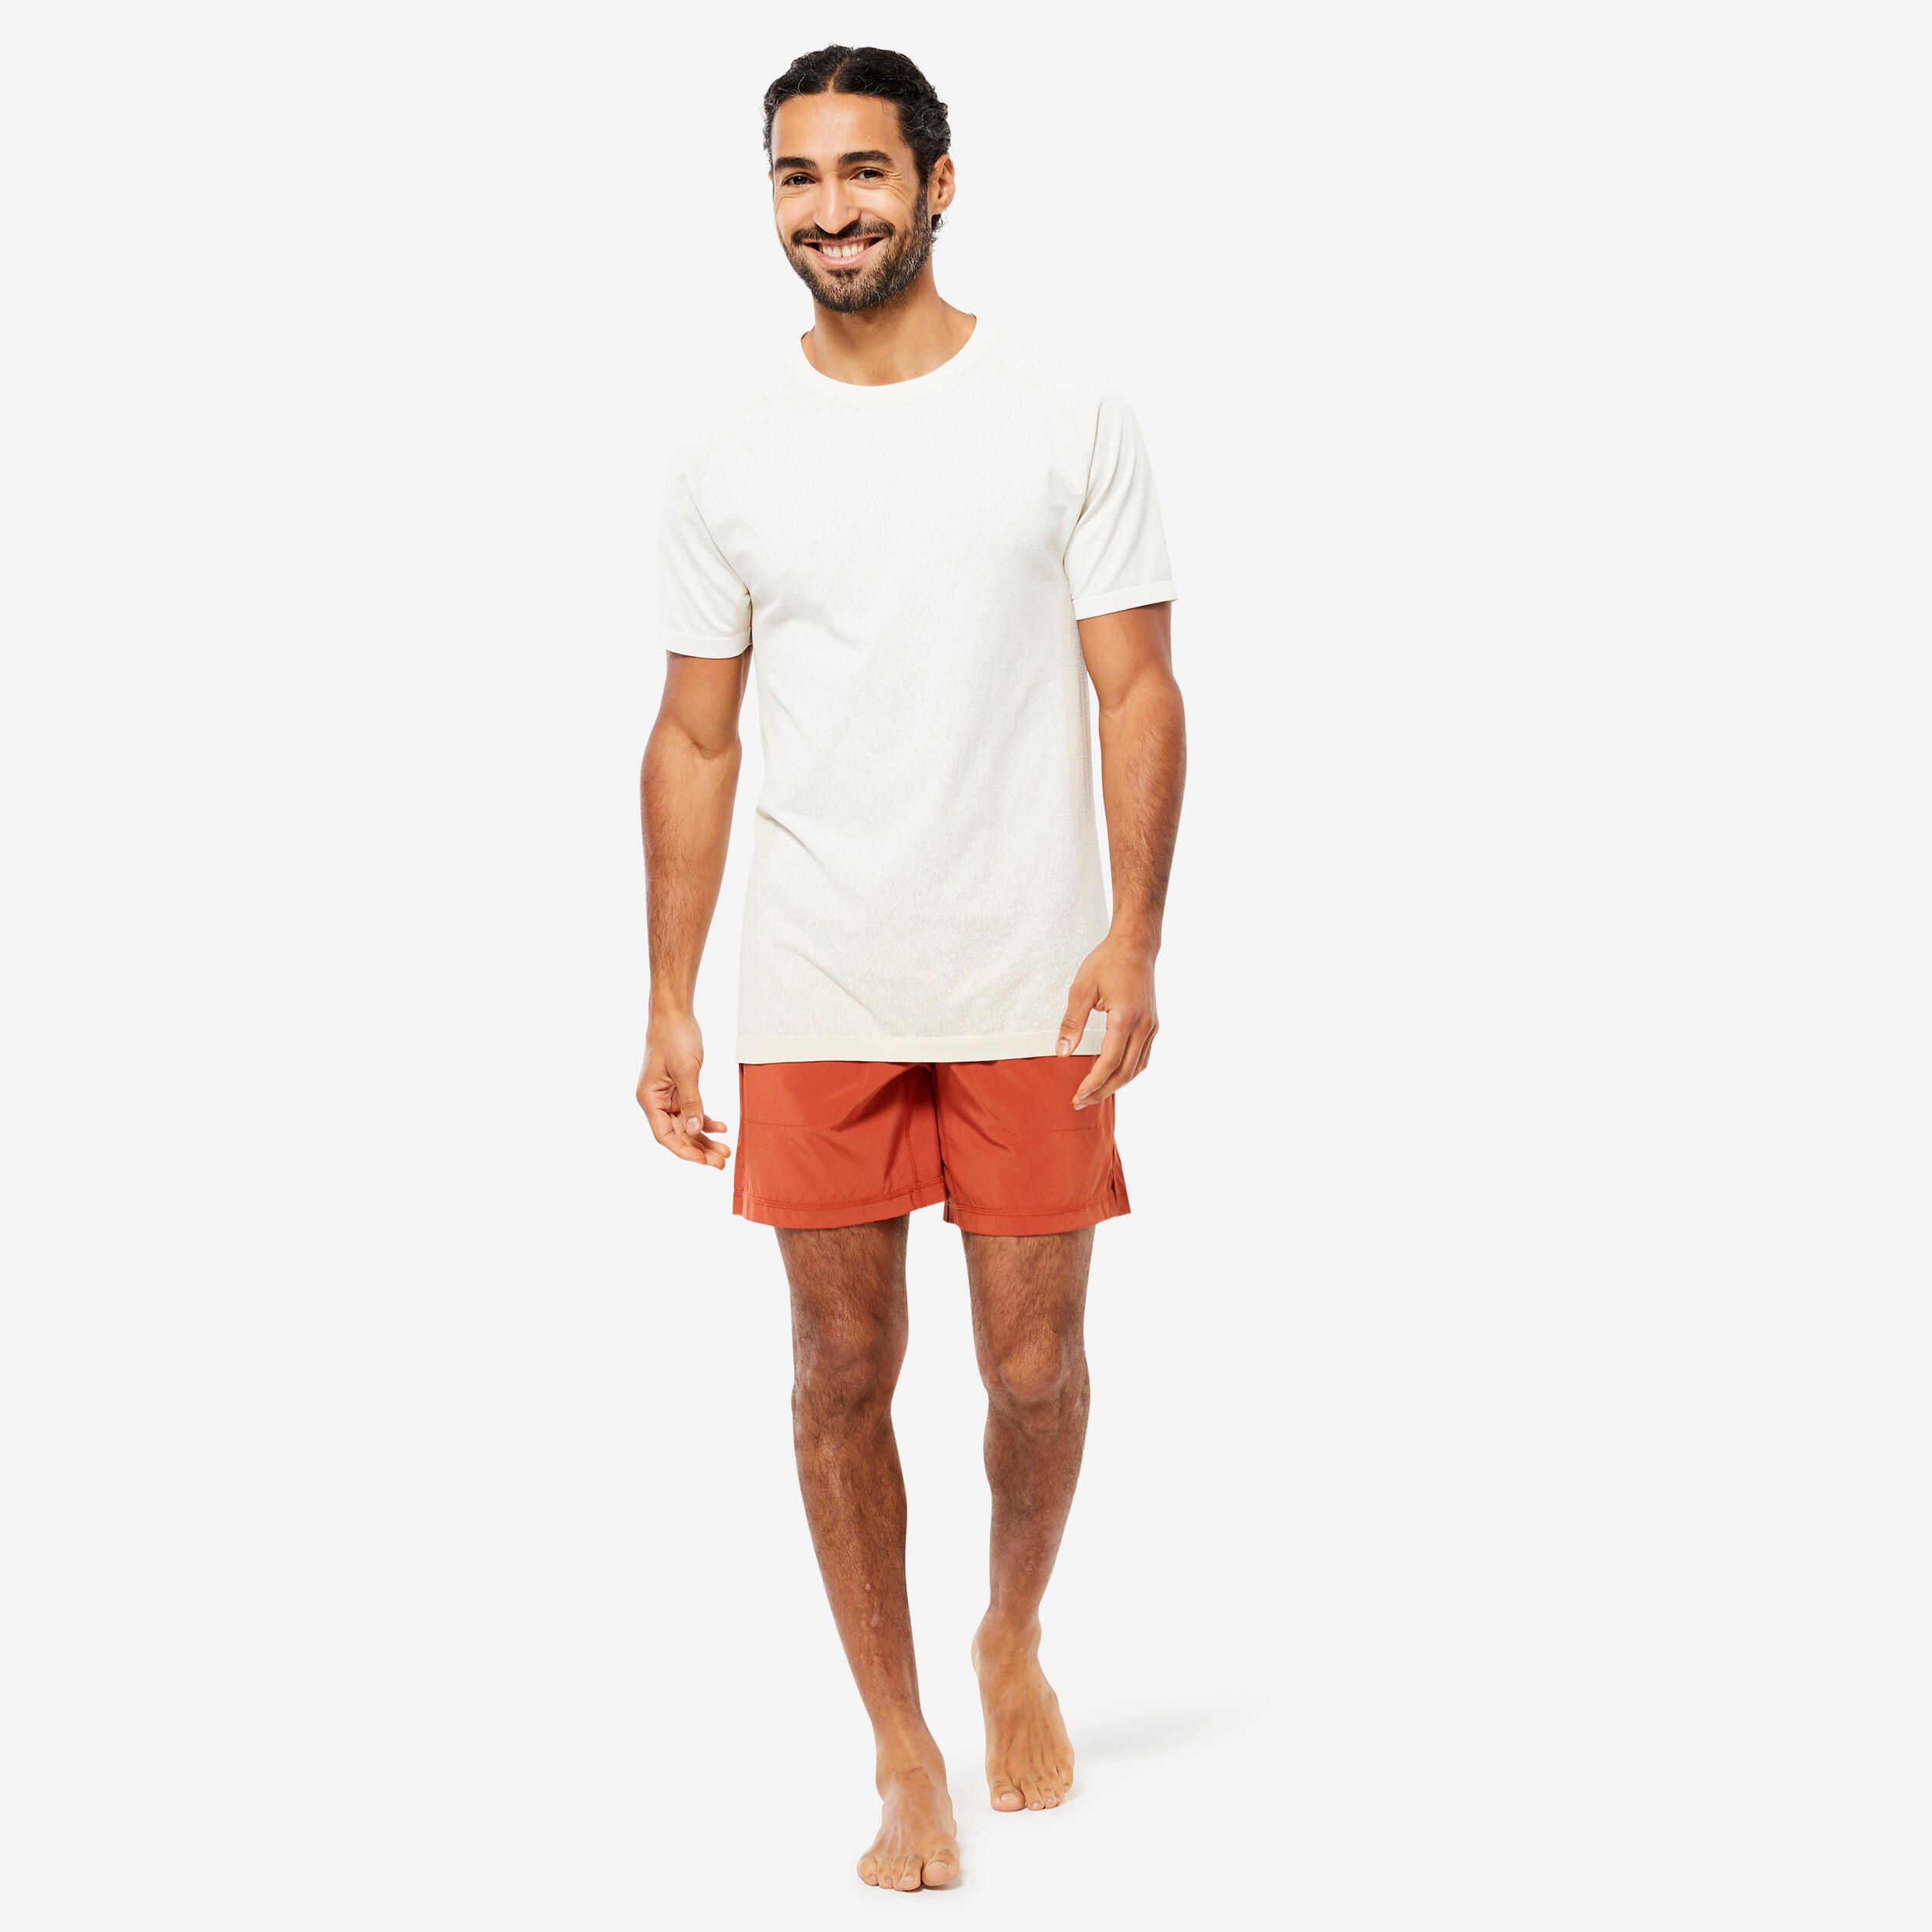 Men's Seamless Short-Sleeved Dynamic Yoga T-Shirt - White 2/6